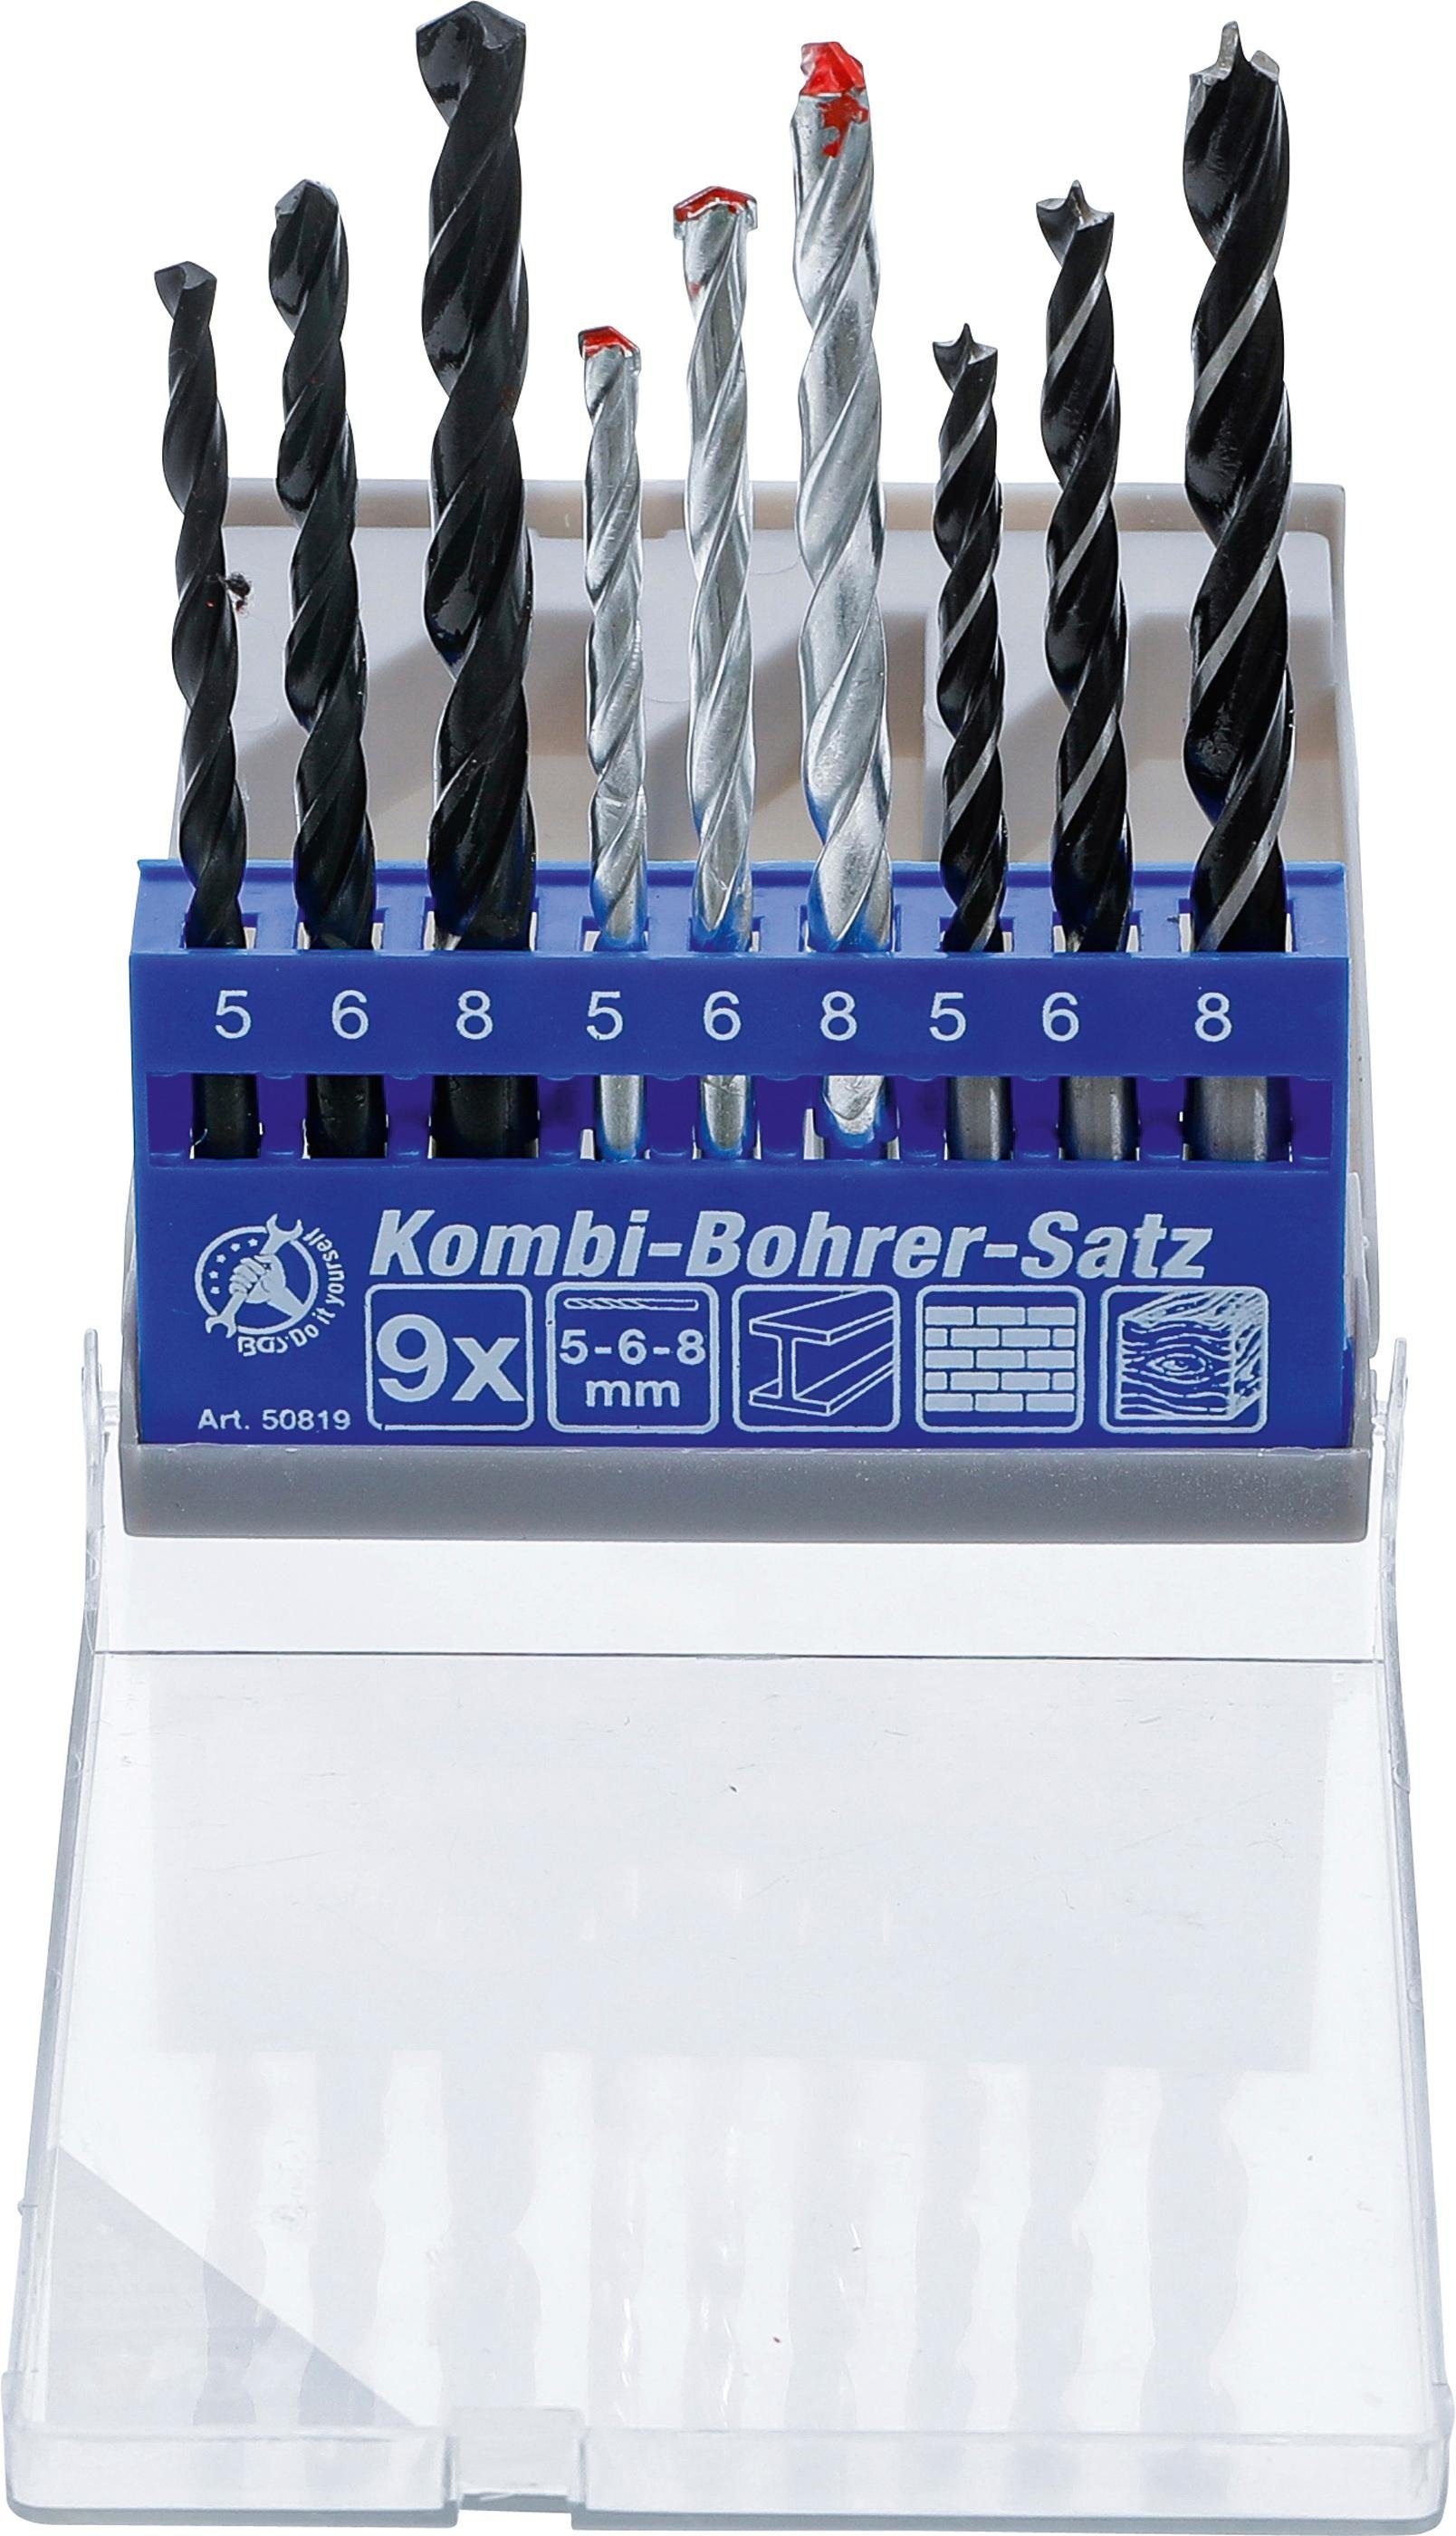 BGS technic Spiralbohrer Kombi-Bohrer-Satz, 5 - 8 mm, 9-tlg.